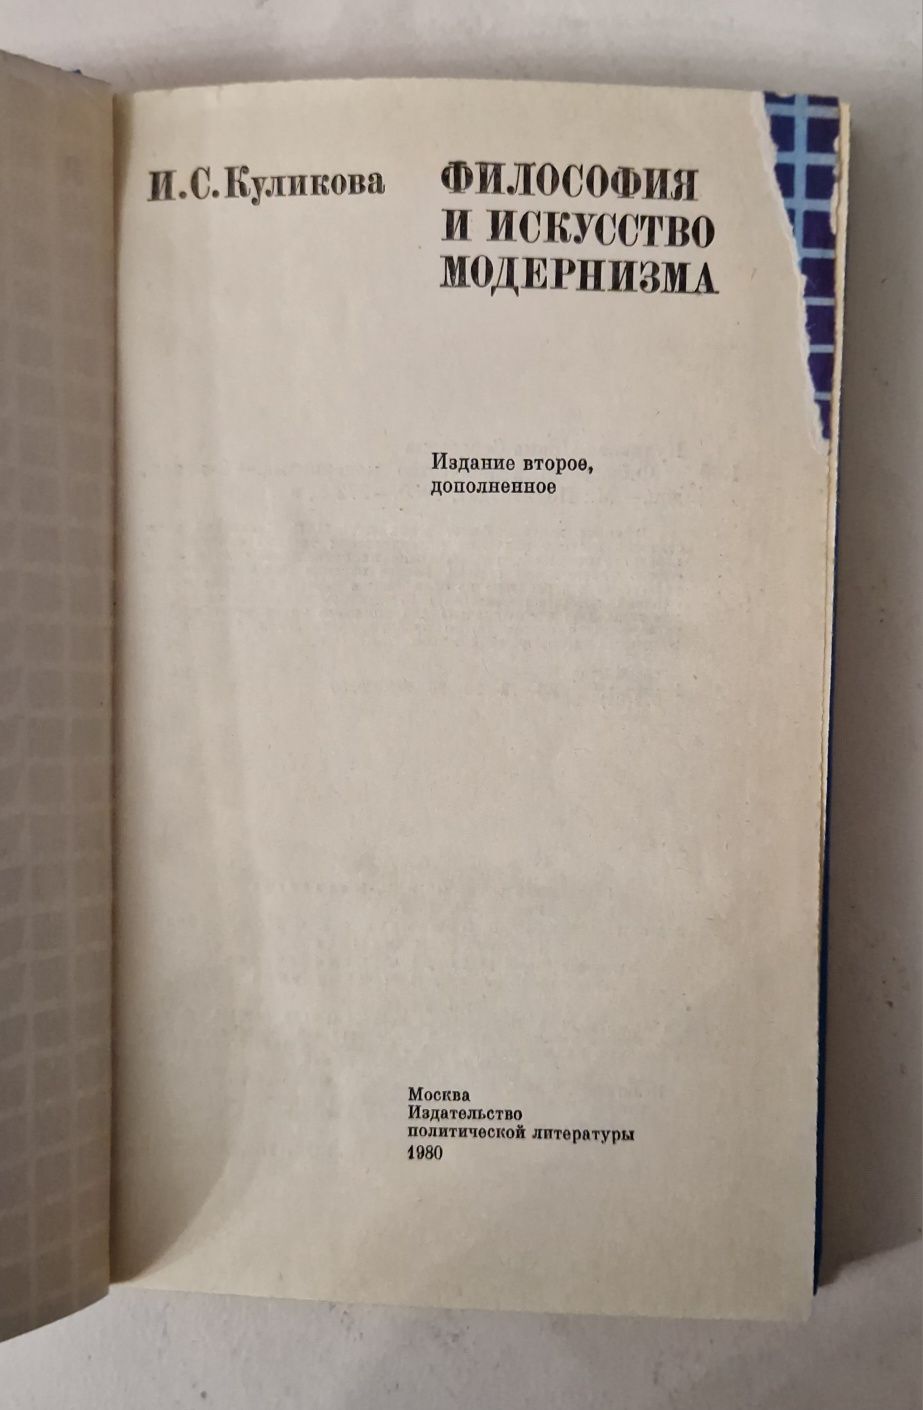 И. С. Куликова "Философия и искусство модернизма" Москва, 1980